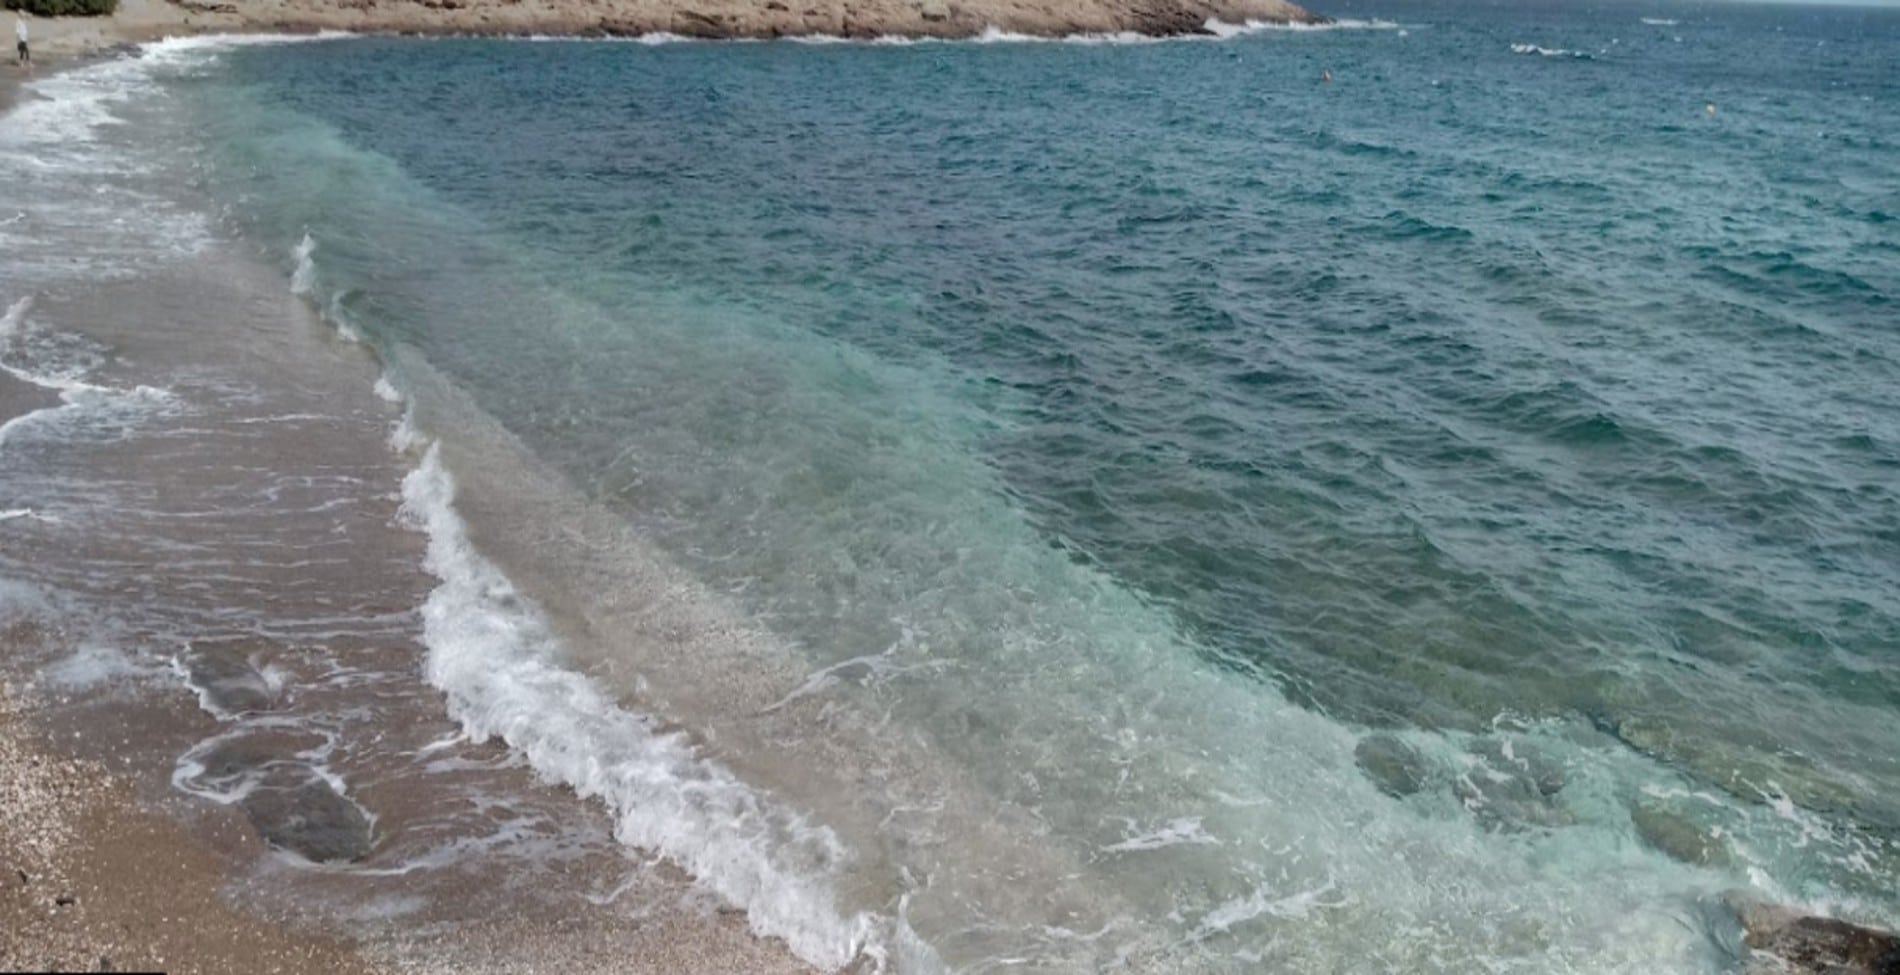 Τσονίμα: Η ψαγμένη μικρή παραλία στην Αττική